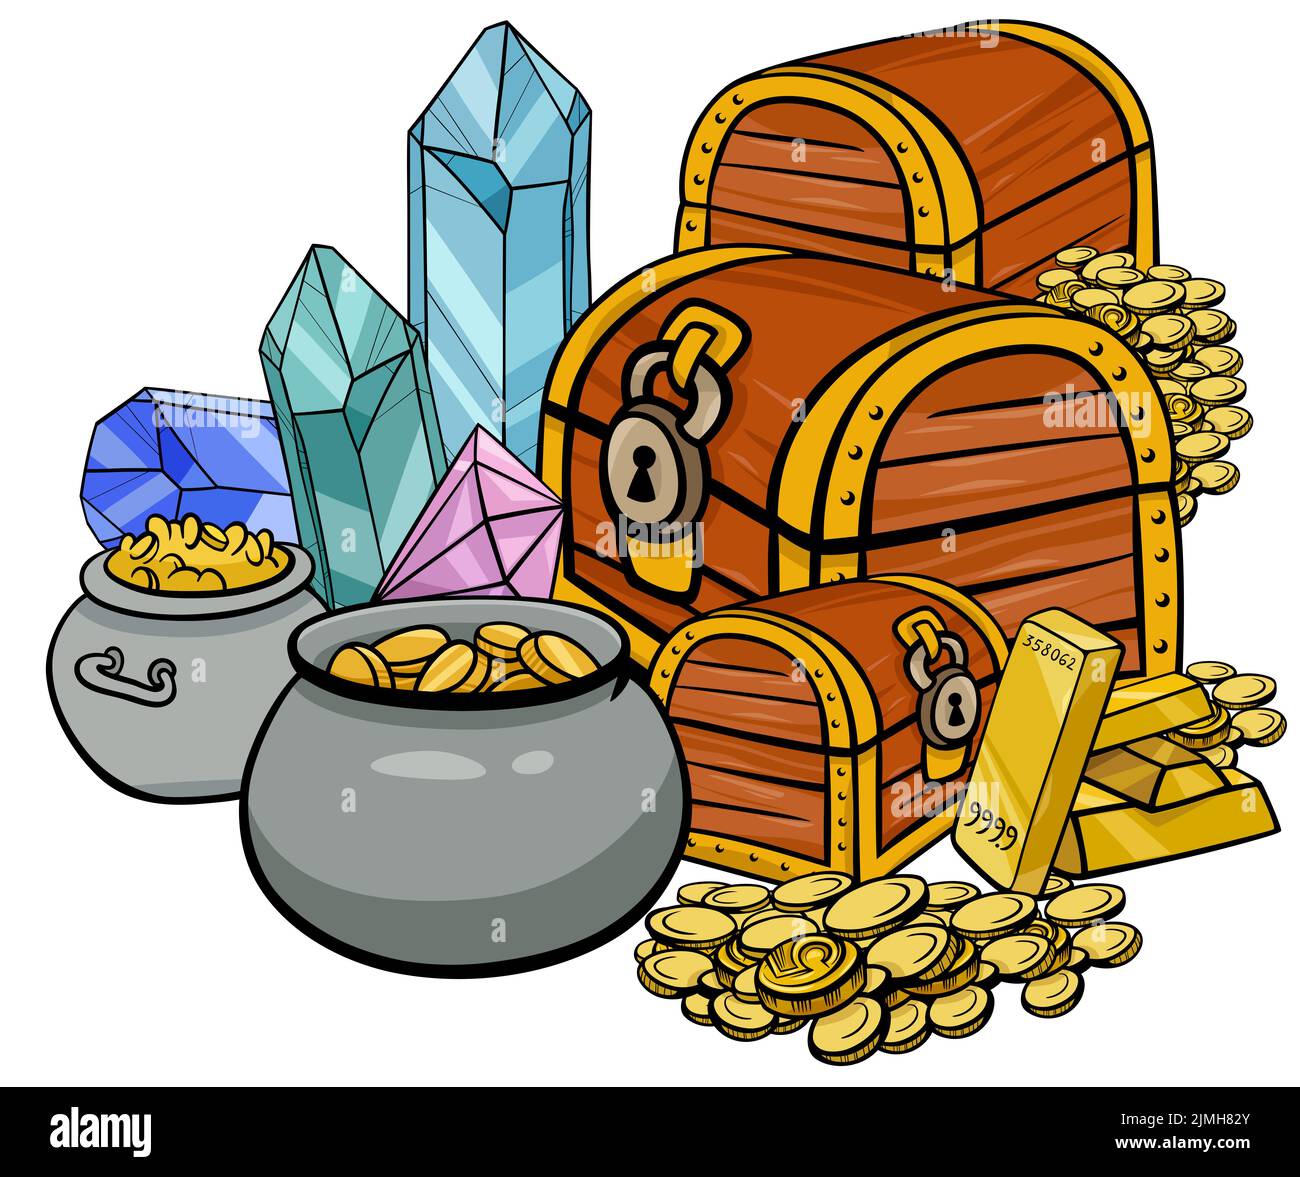 Ilustración de un tesoro con gemas y oro Foto de stock